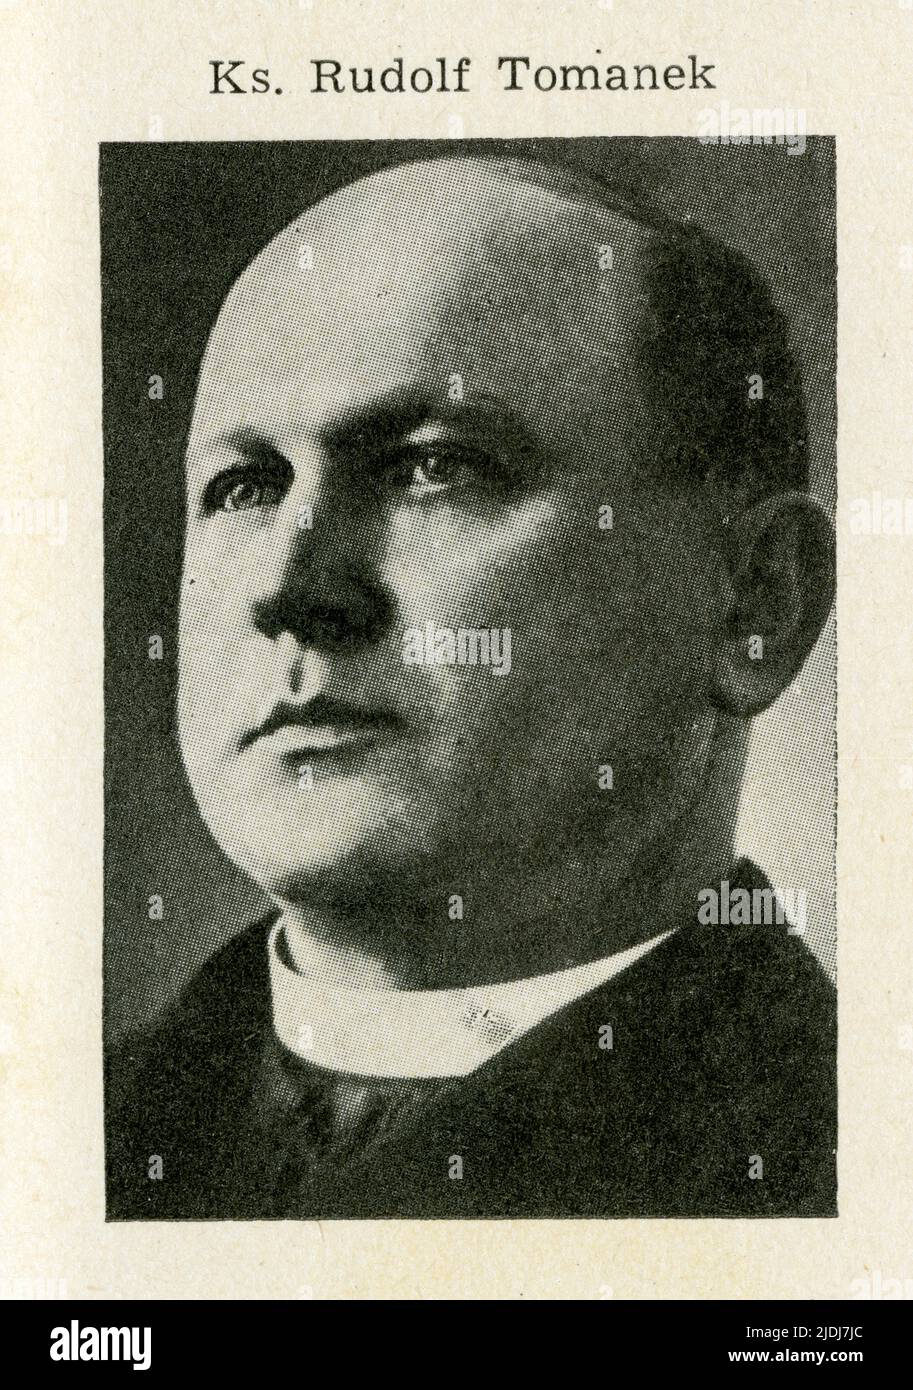 KSIADZ RUDOLF TOMANEK.1879-1941.Urodził się 1 lutego 1879 w Ropicy, gdzie jego ojciec Franciszek był młynarzem. Naukę gimnazjalną pobierał i ukończył Stock Photo